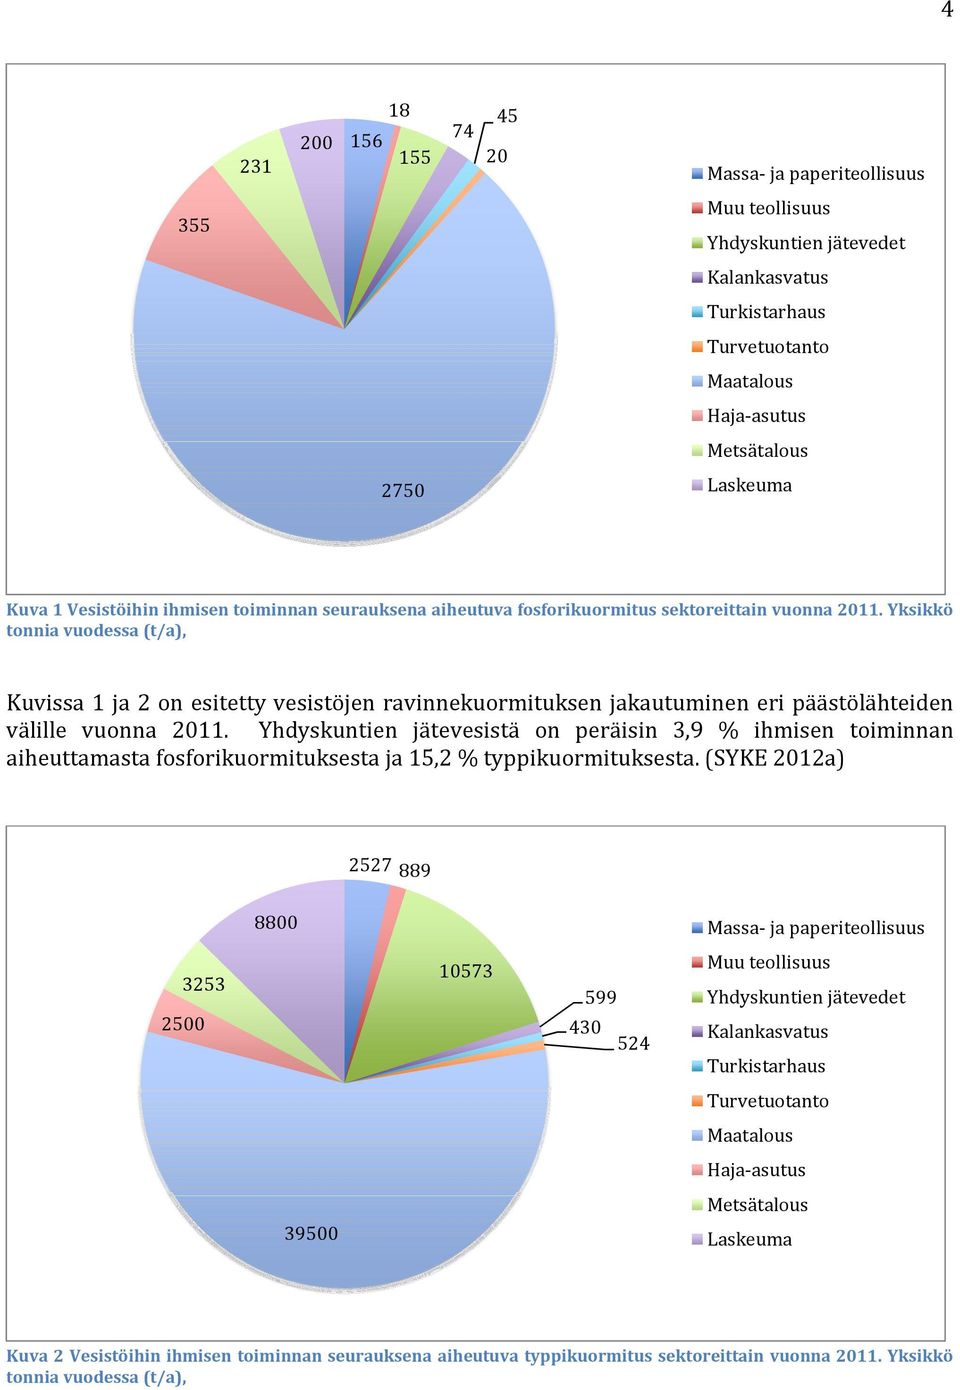 Yksikkö tonnia vuodessa (t/a), Kuvissa 1 ja 2 on esitetty vesistöjen ravinnekuormituksen jakautuminen eri päästölähteiden välille vuonna 2011.